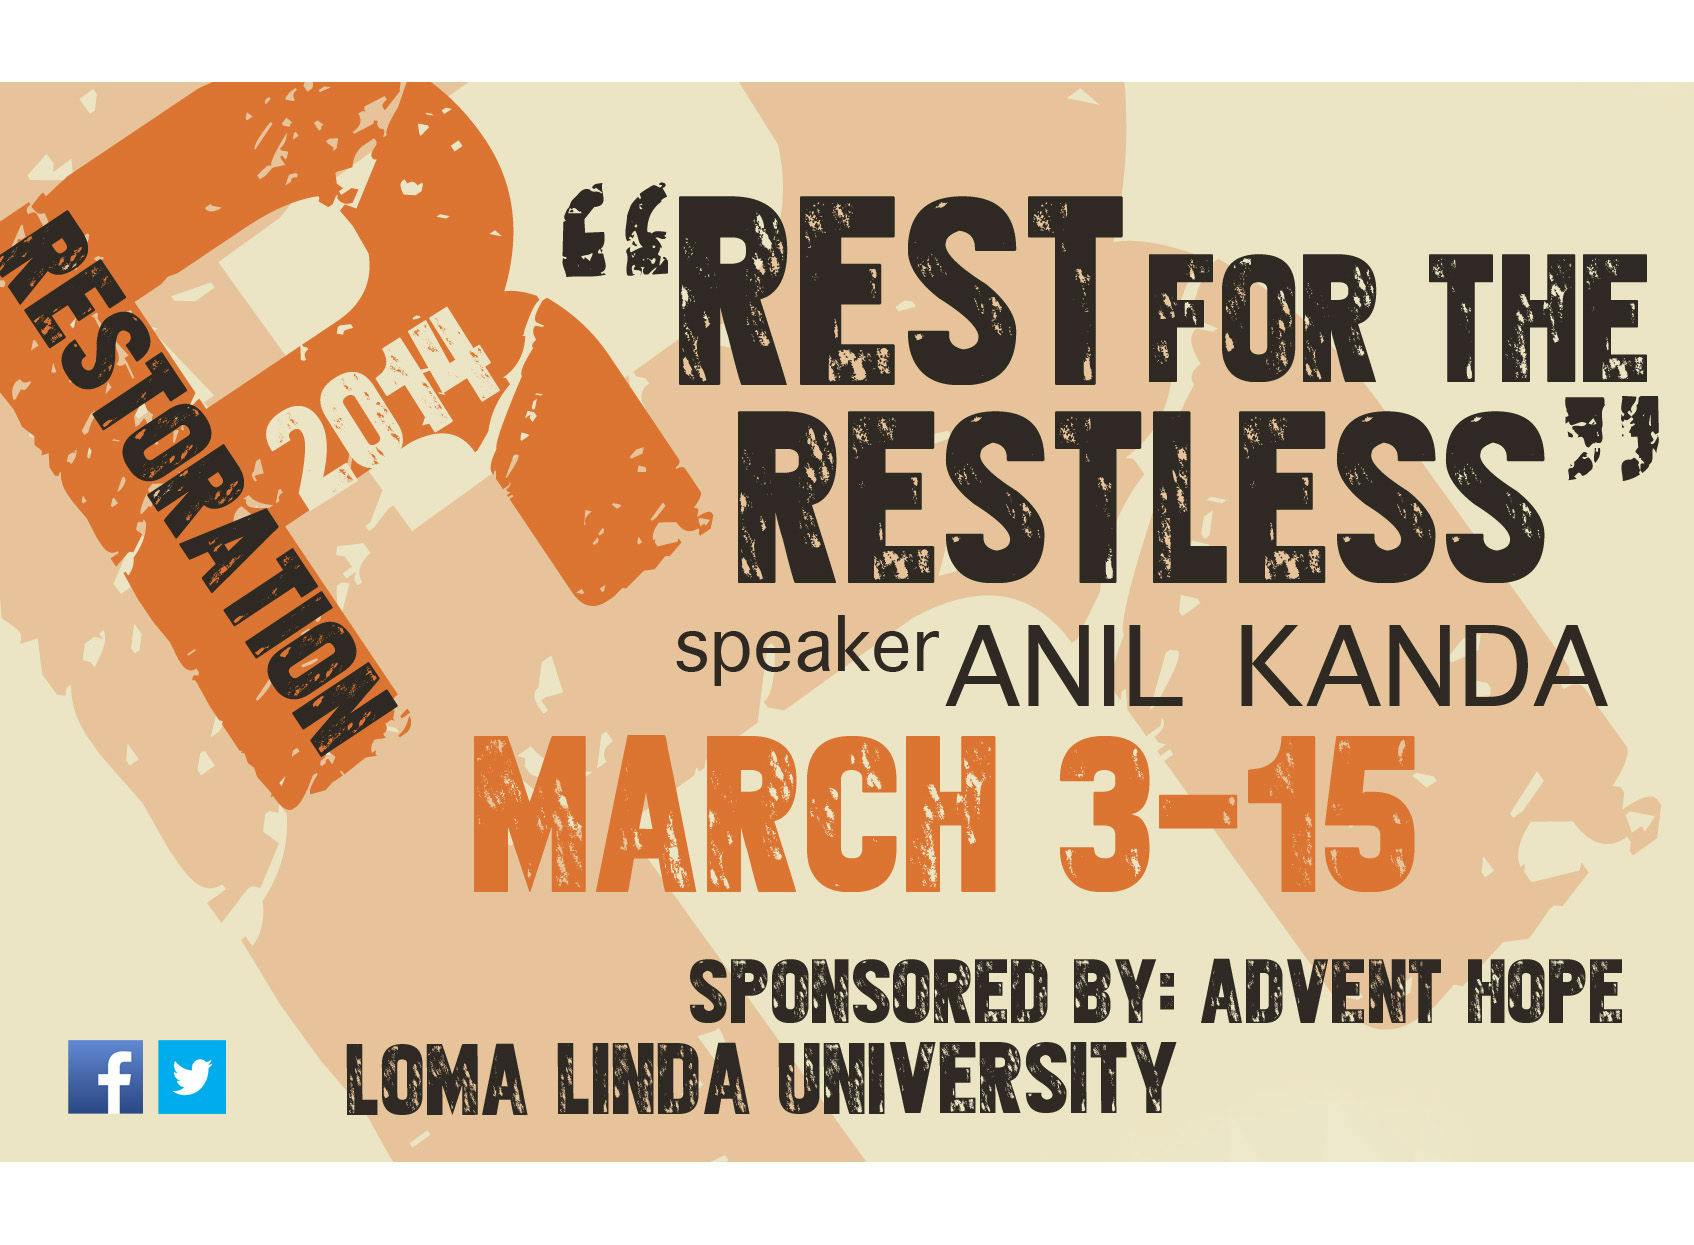 Restoration 2014: Rest for the Restless